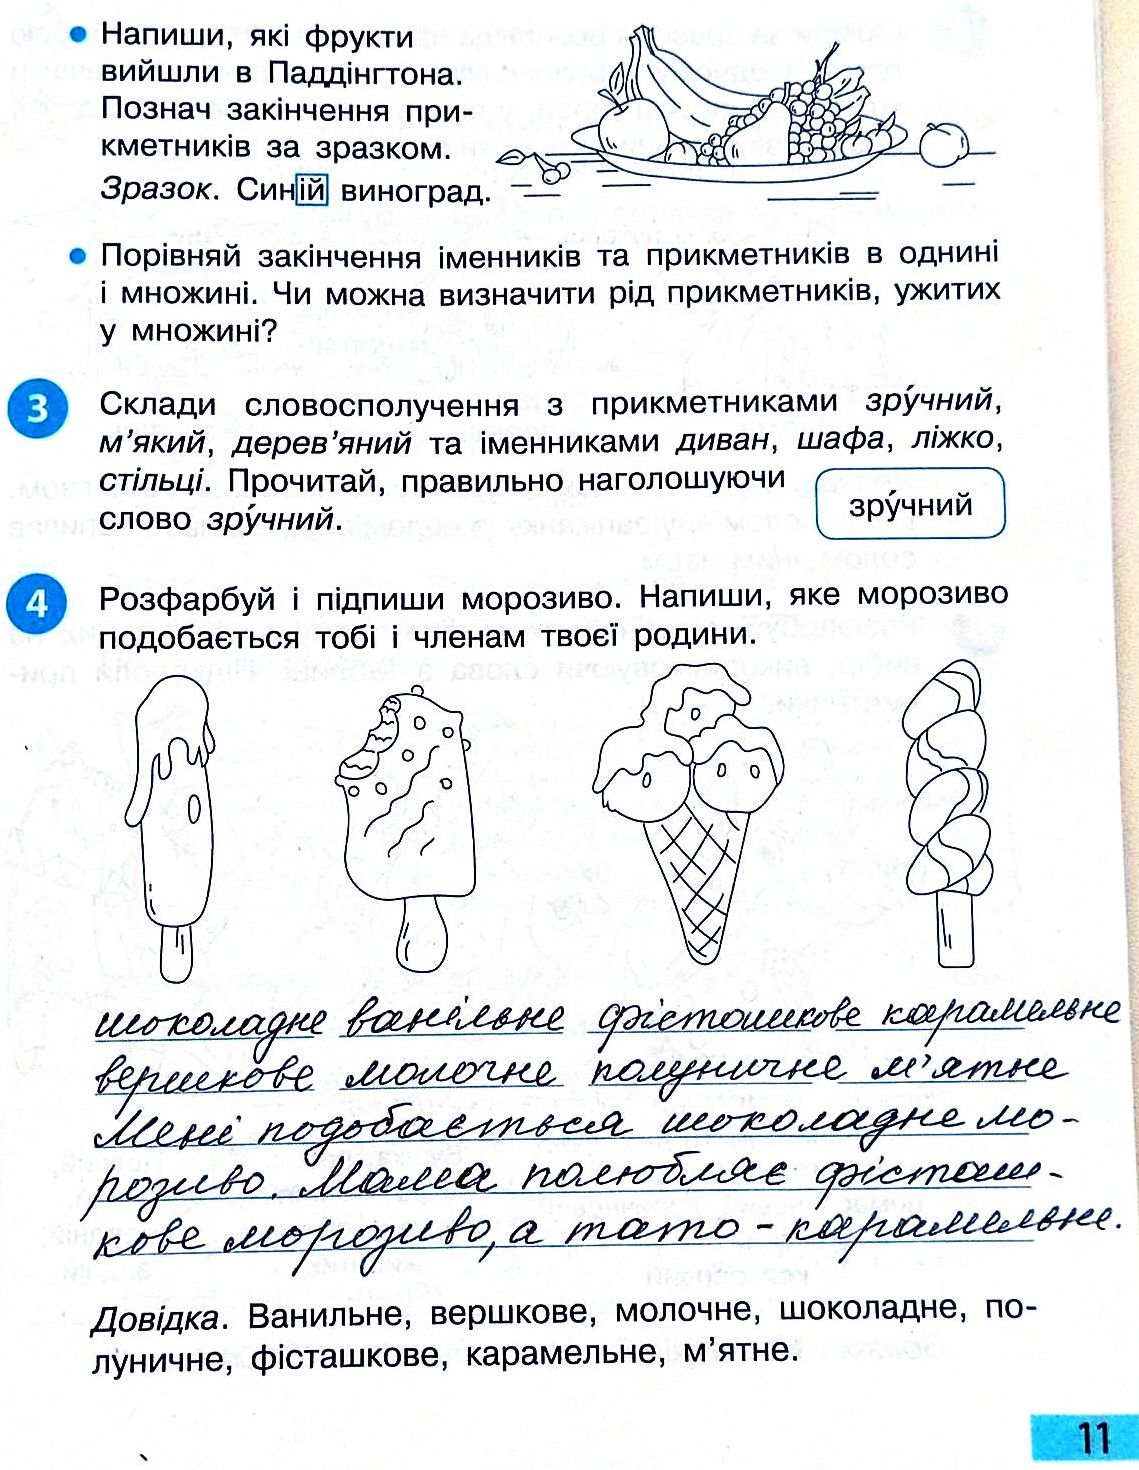 Сторінка 11 частина 2 гдз 3 клас робочий зошит українська мова Большакова